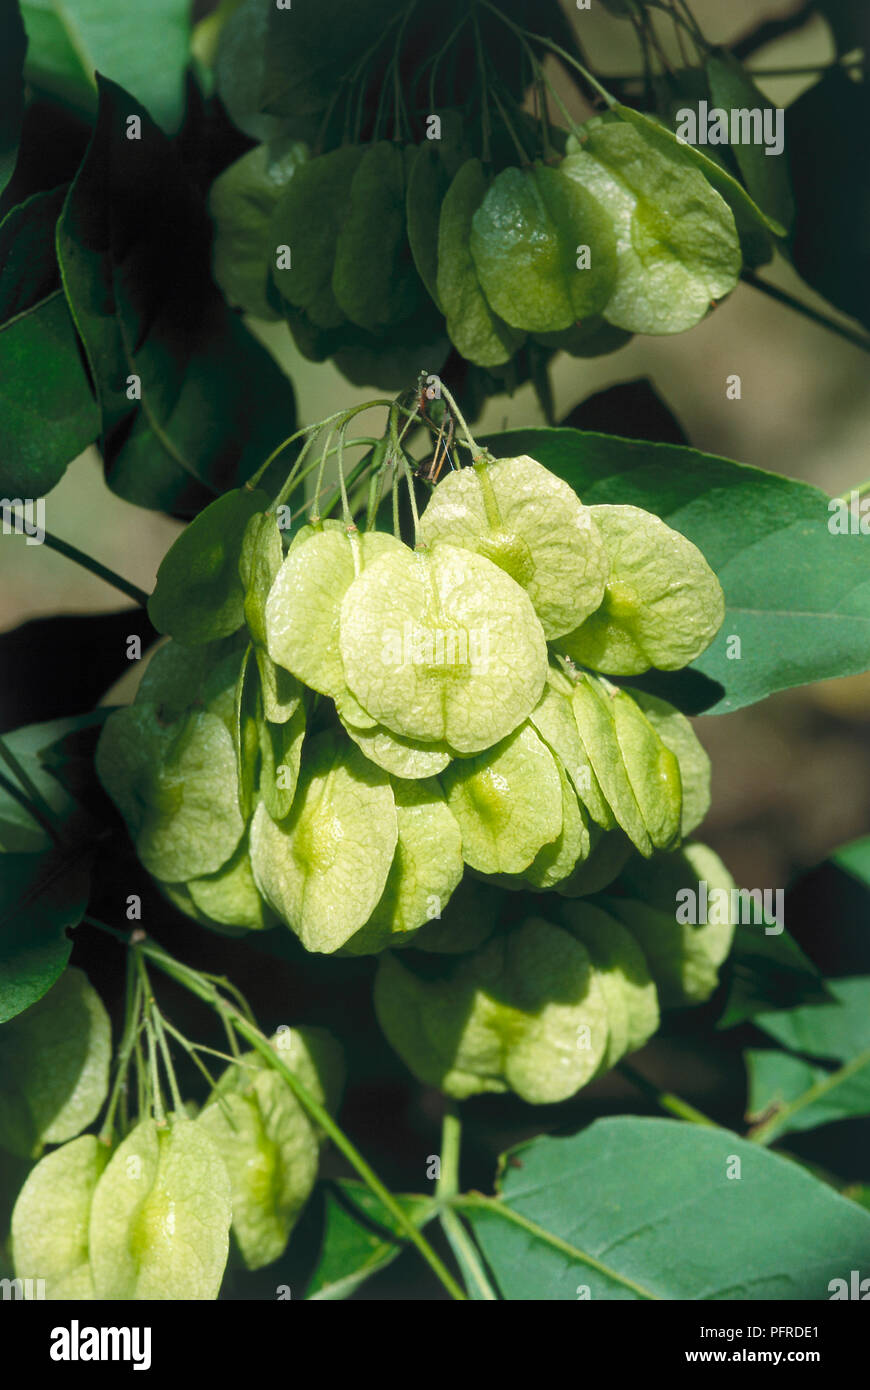 Ptelea trifoliata (Hoptree) fruit, close-up Stock Photo